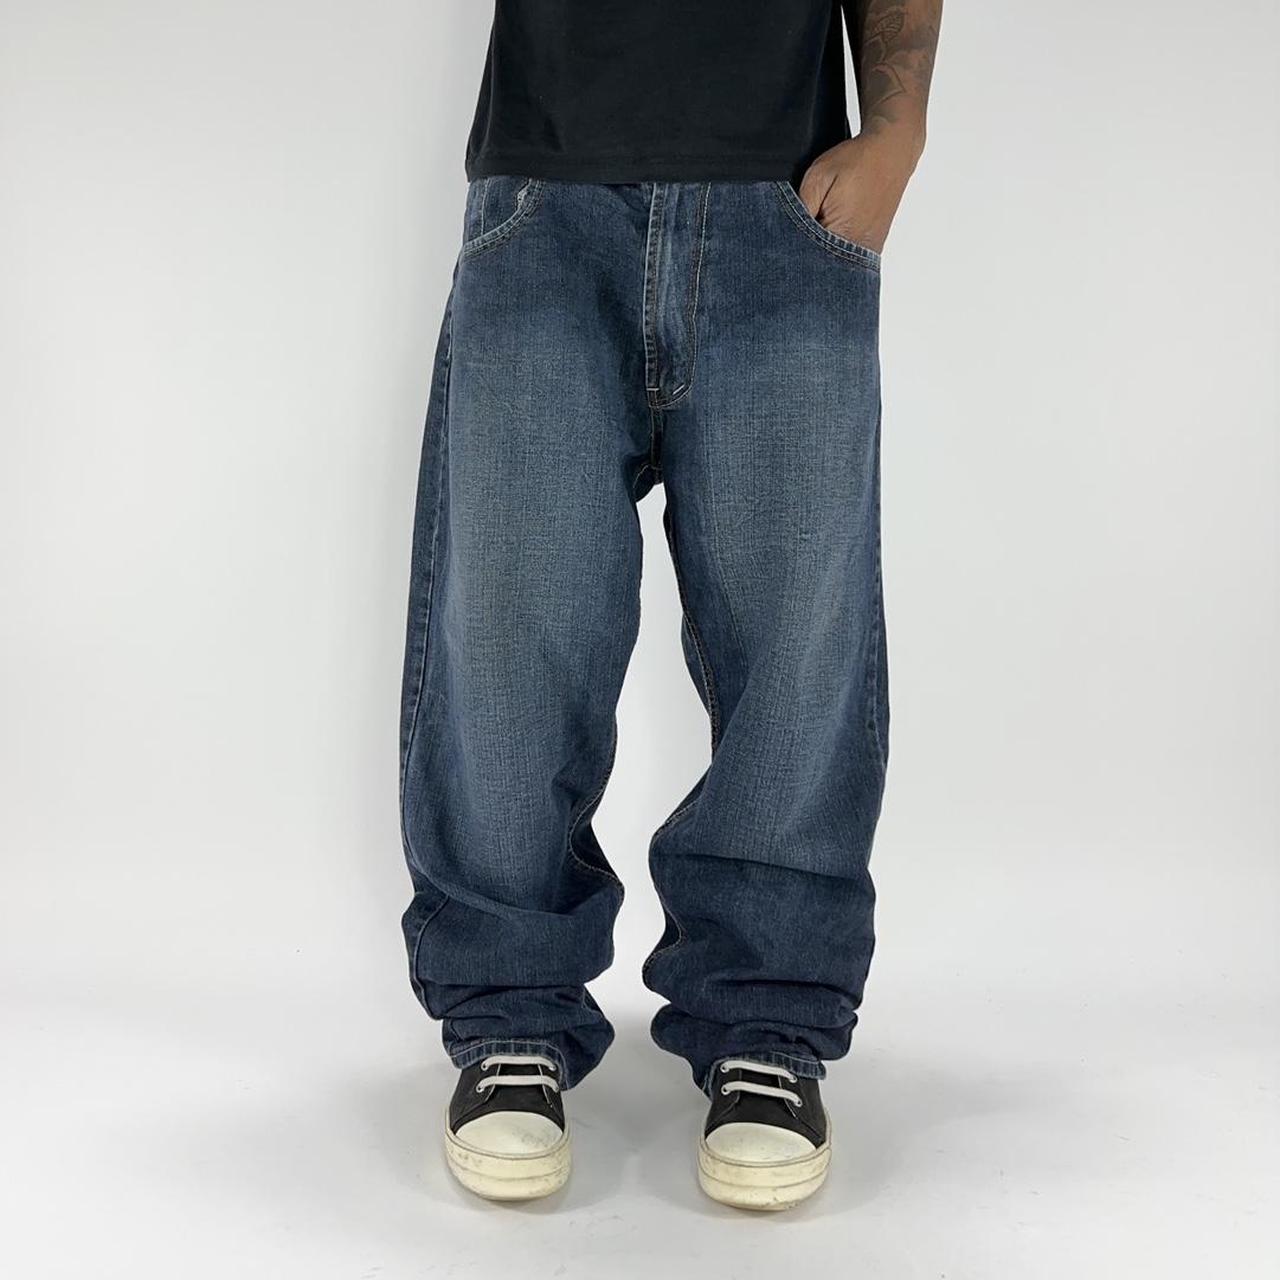 2000s Y2K Premium 4 Baggy Loose Jean Pants Fits... - Depop